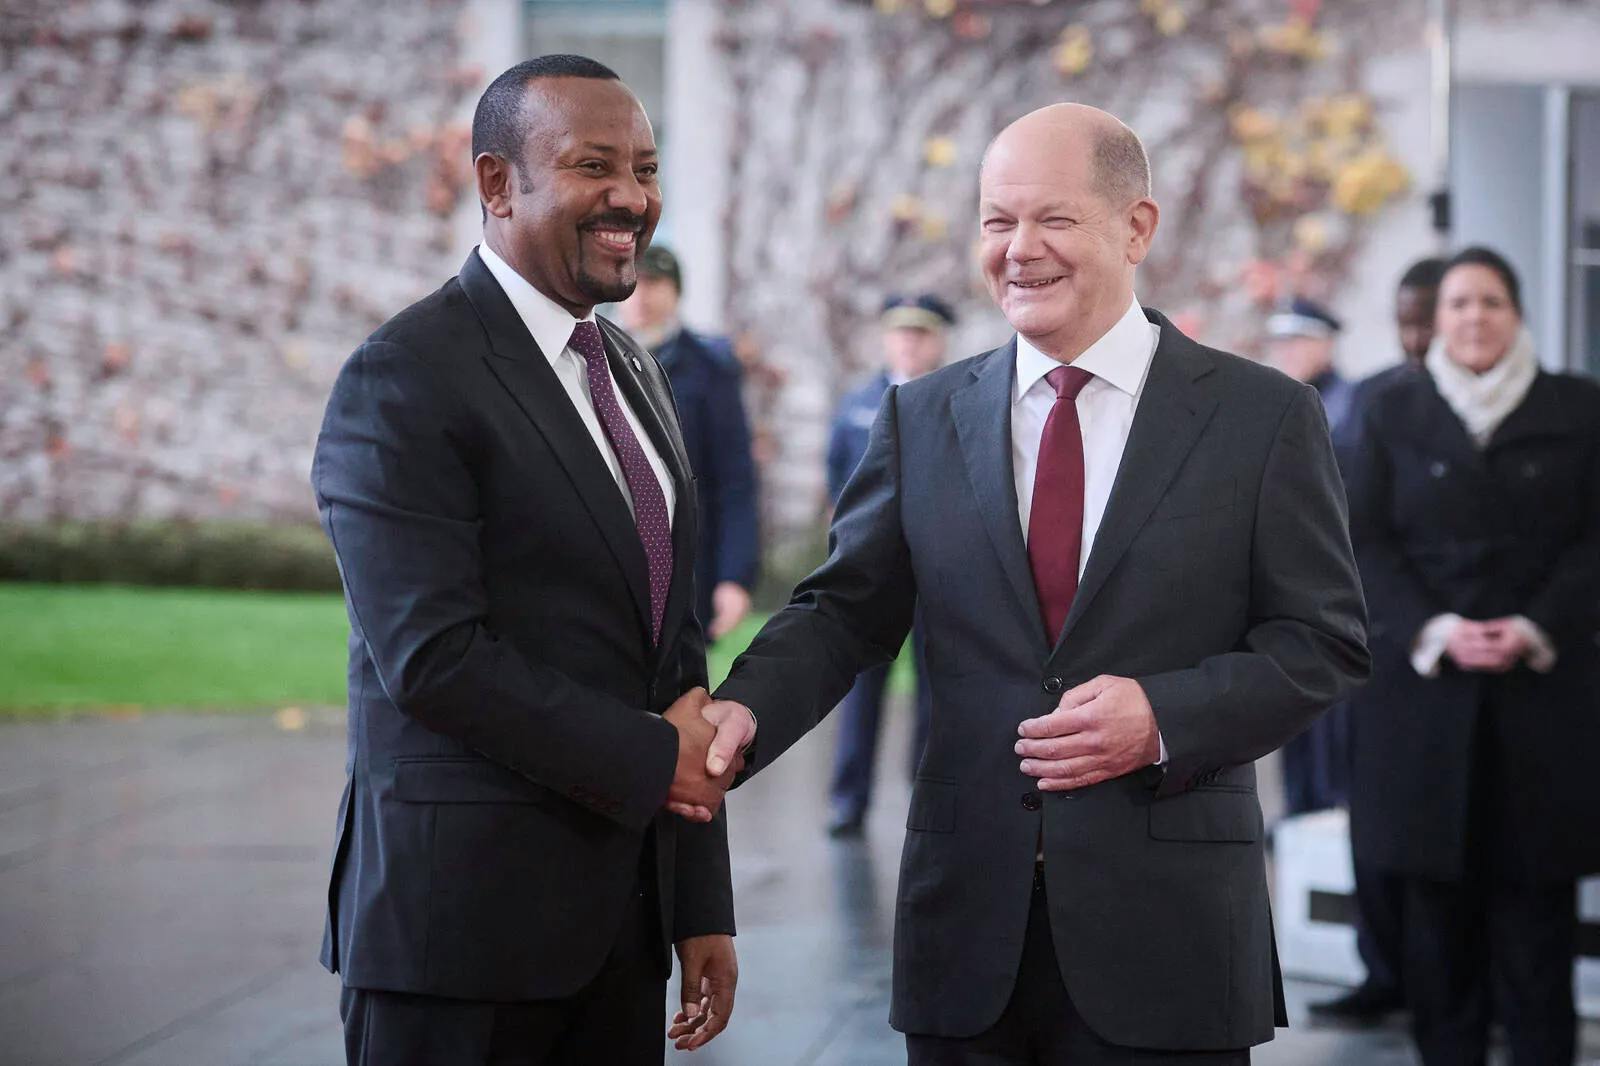 Äthiopien baut Milliarden-Prunkpalast – Bundesregierung will weiter Entwicklungshilfe zahlen